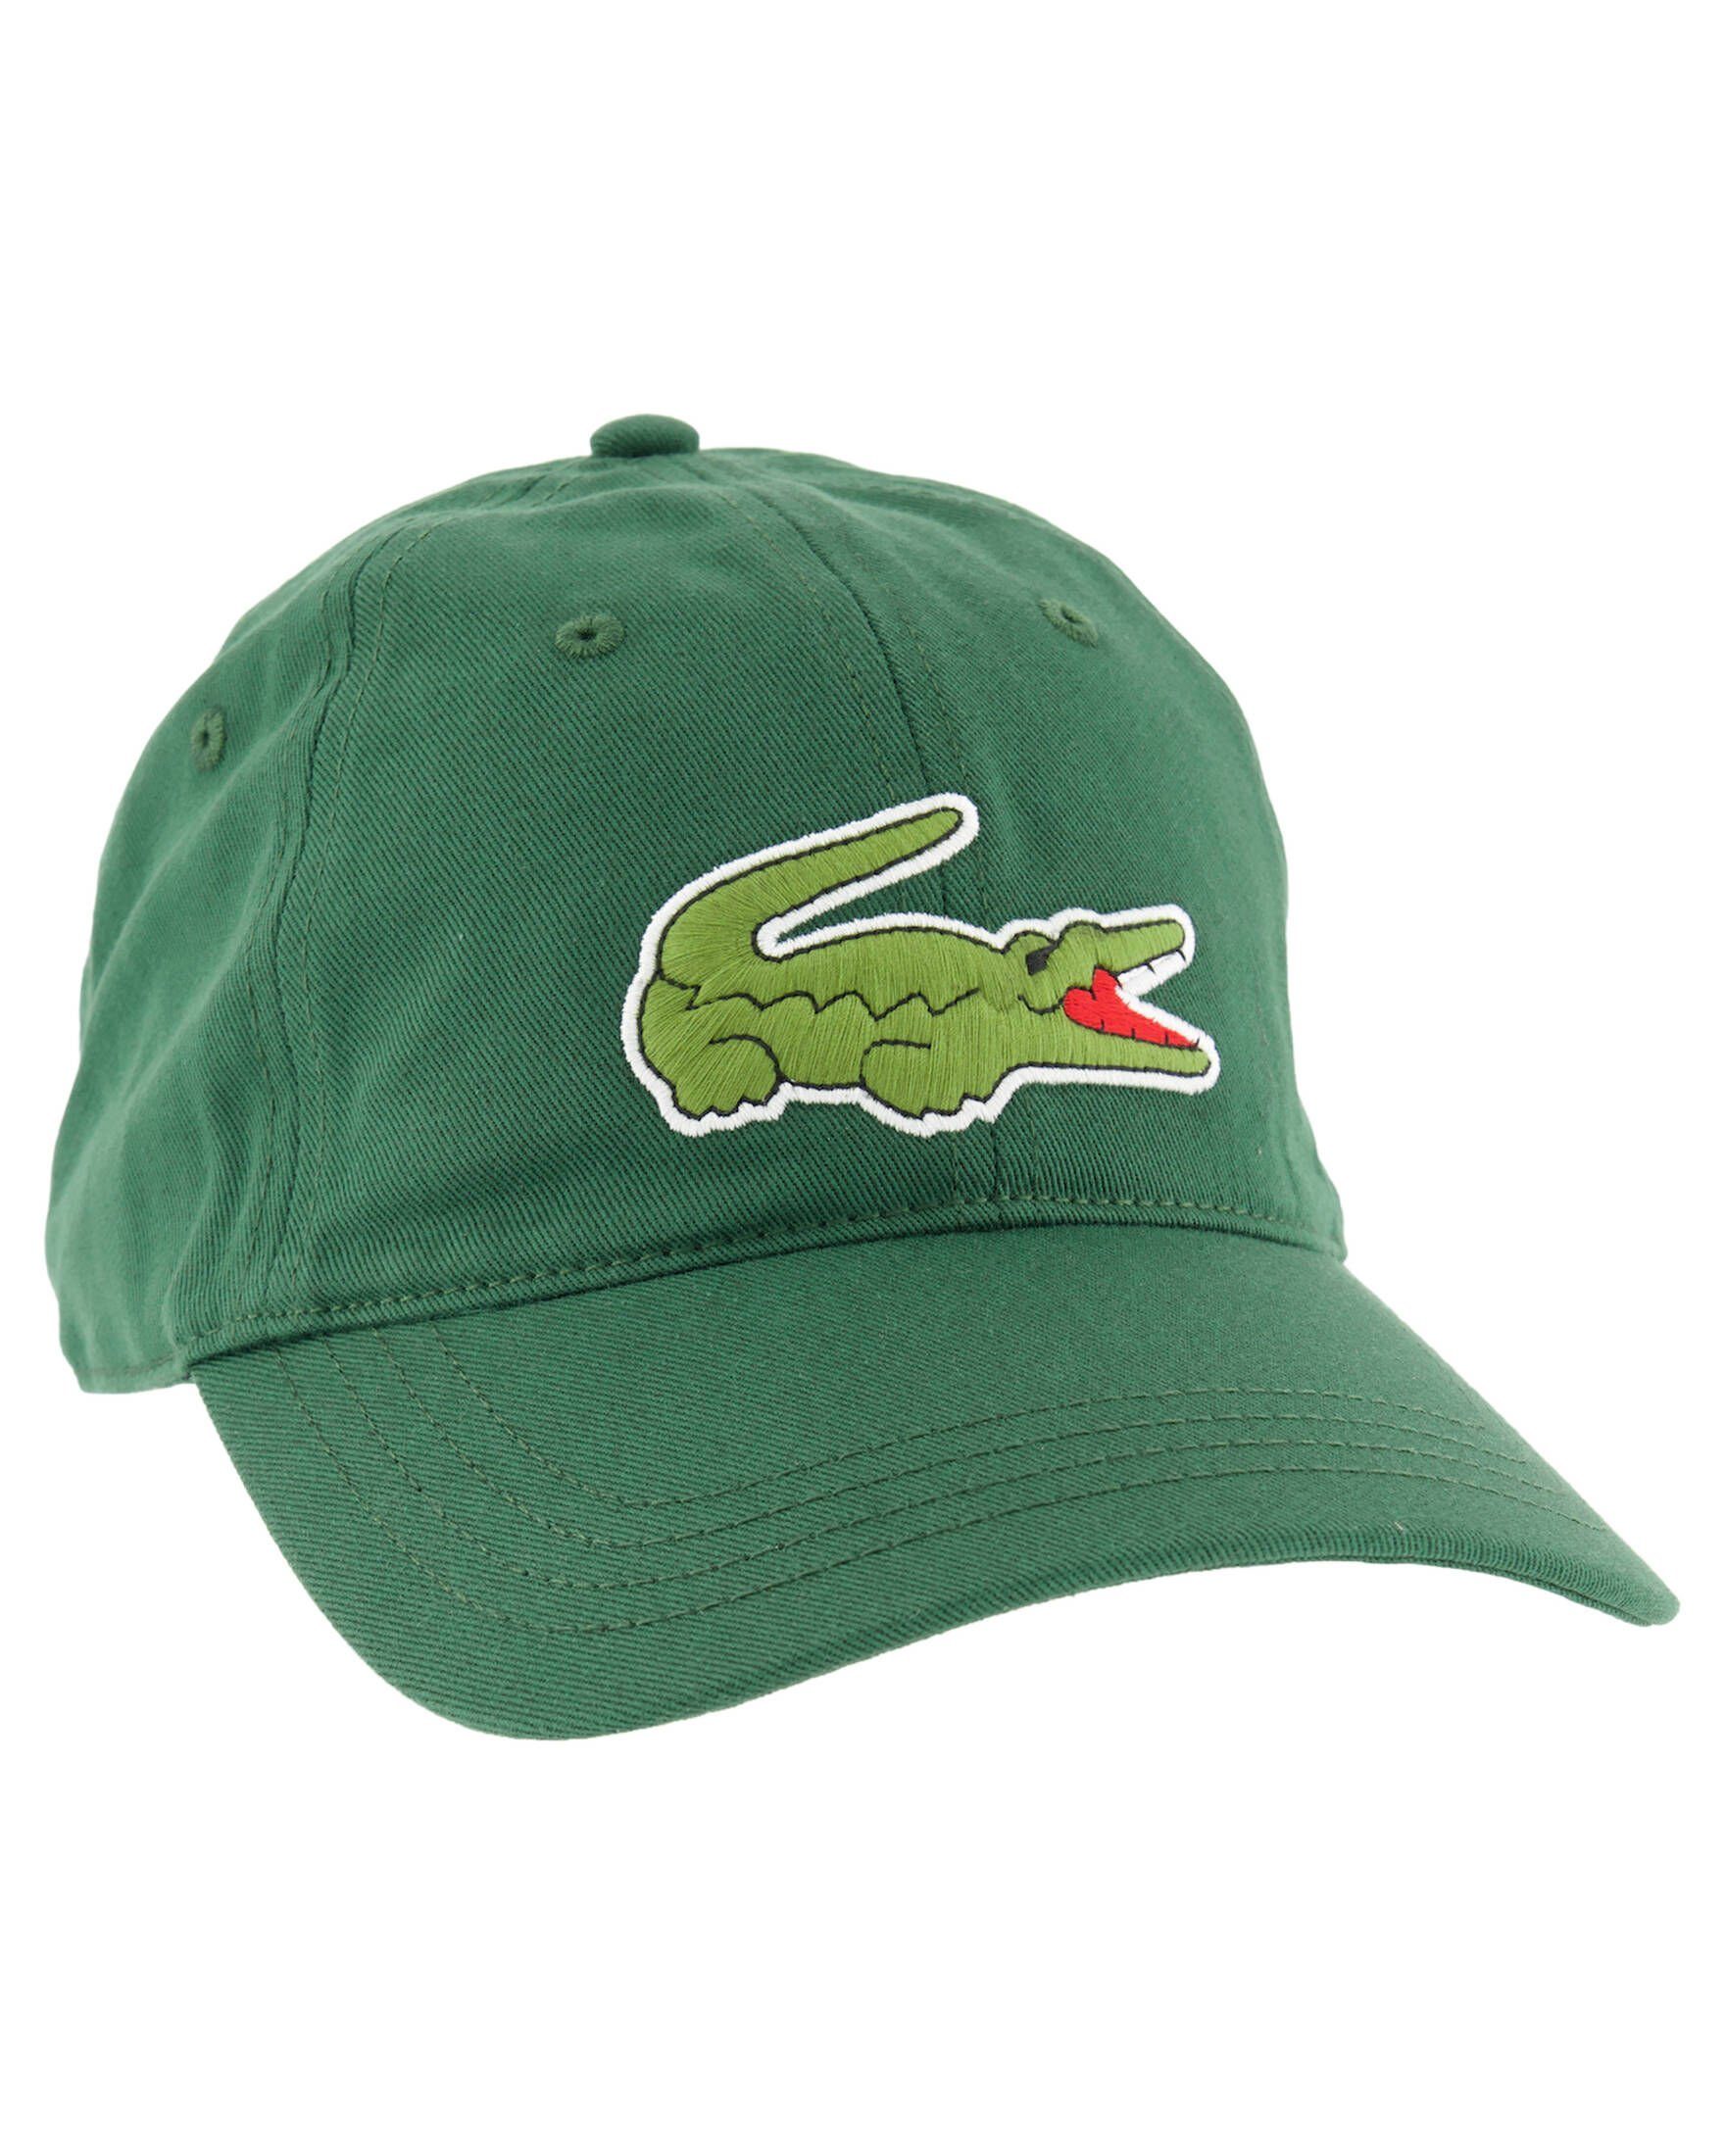 Visor Lacoste Schildmütze grün (43) CAP